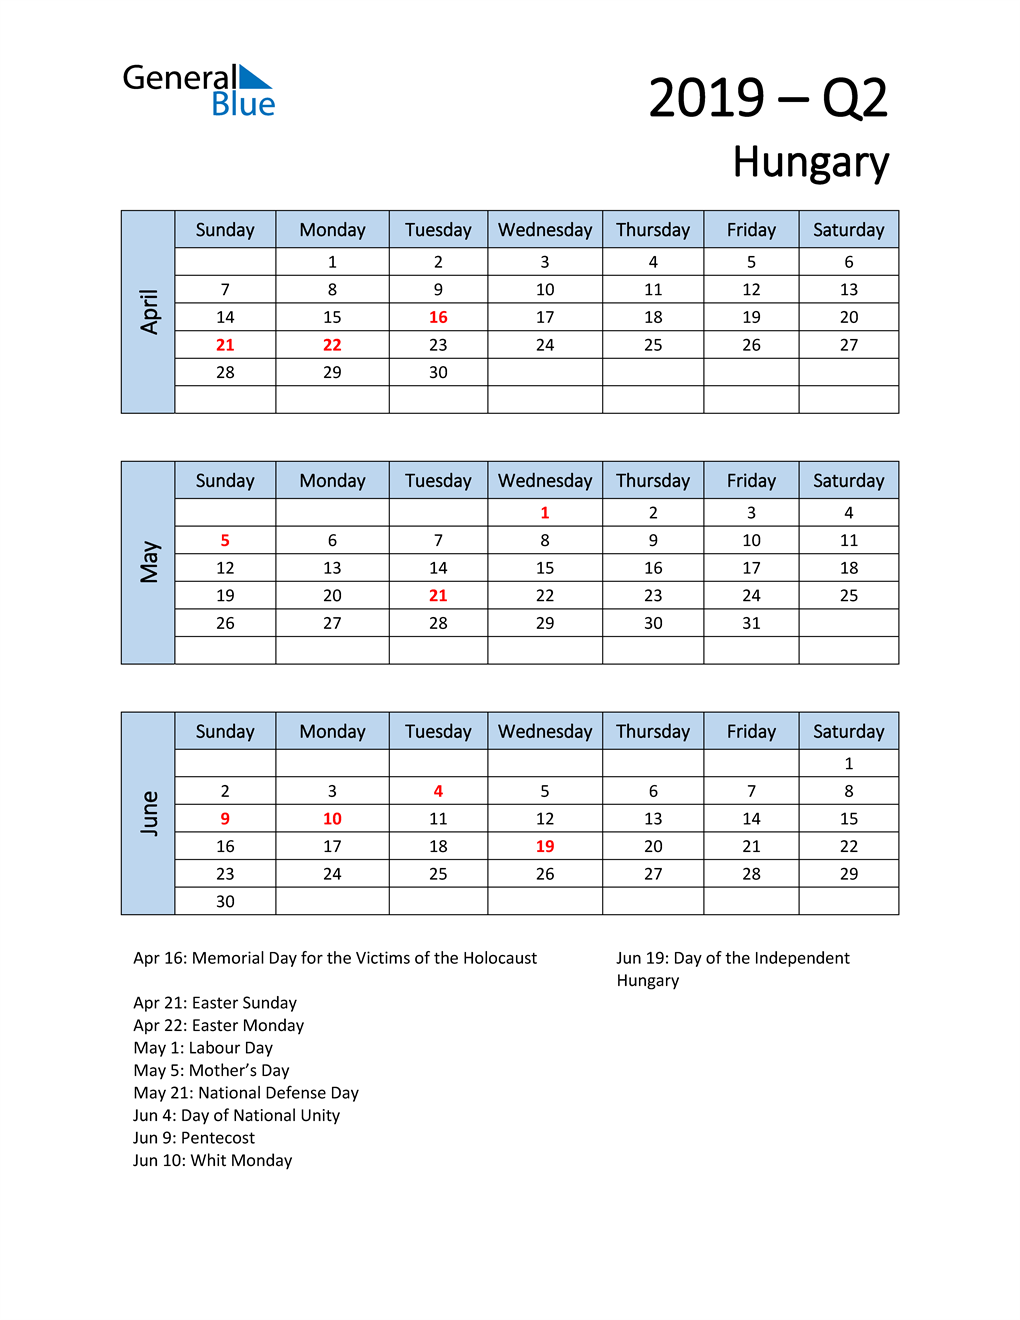  Free Q2 2019 Calendar for Hungary